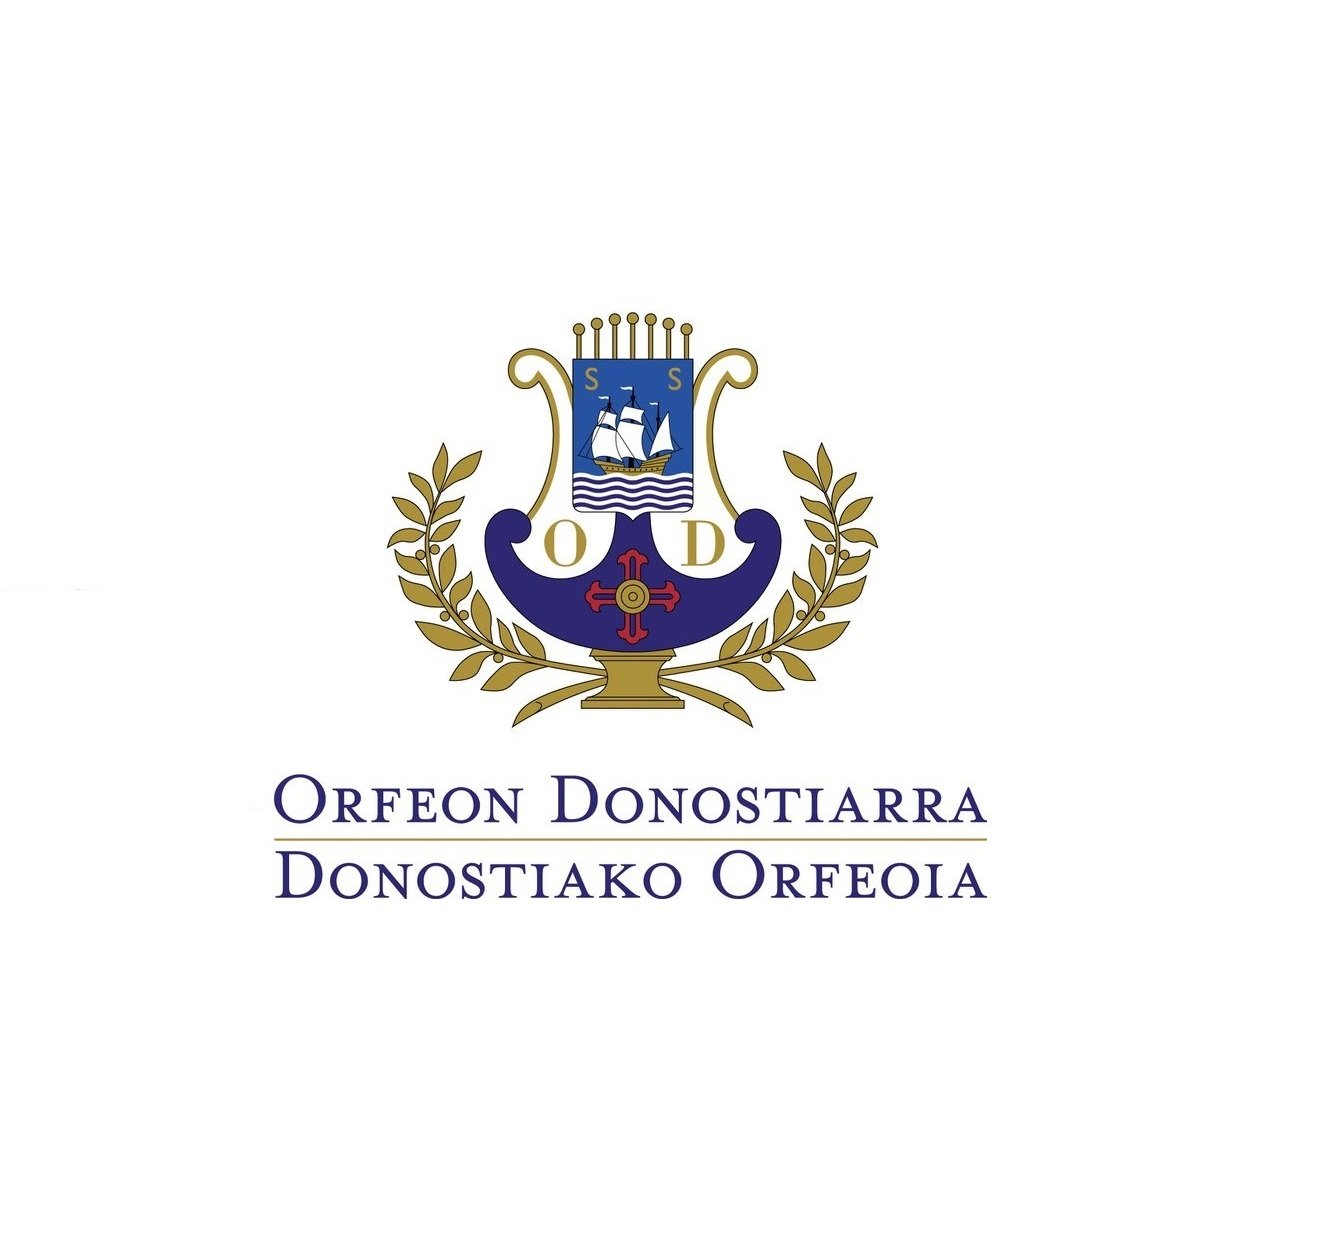 Cuenta oficial del Orfeón Donostiarra / Donostiako Orfeoiaren kontu ofiziala.